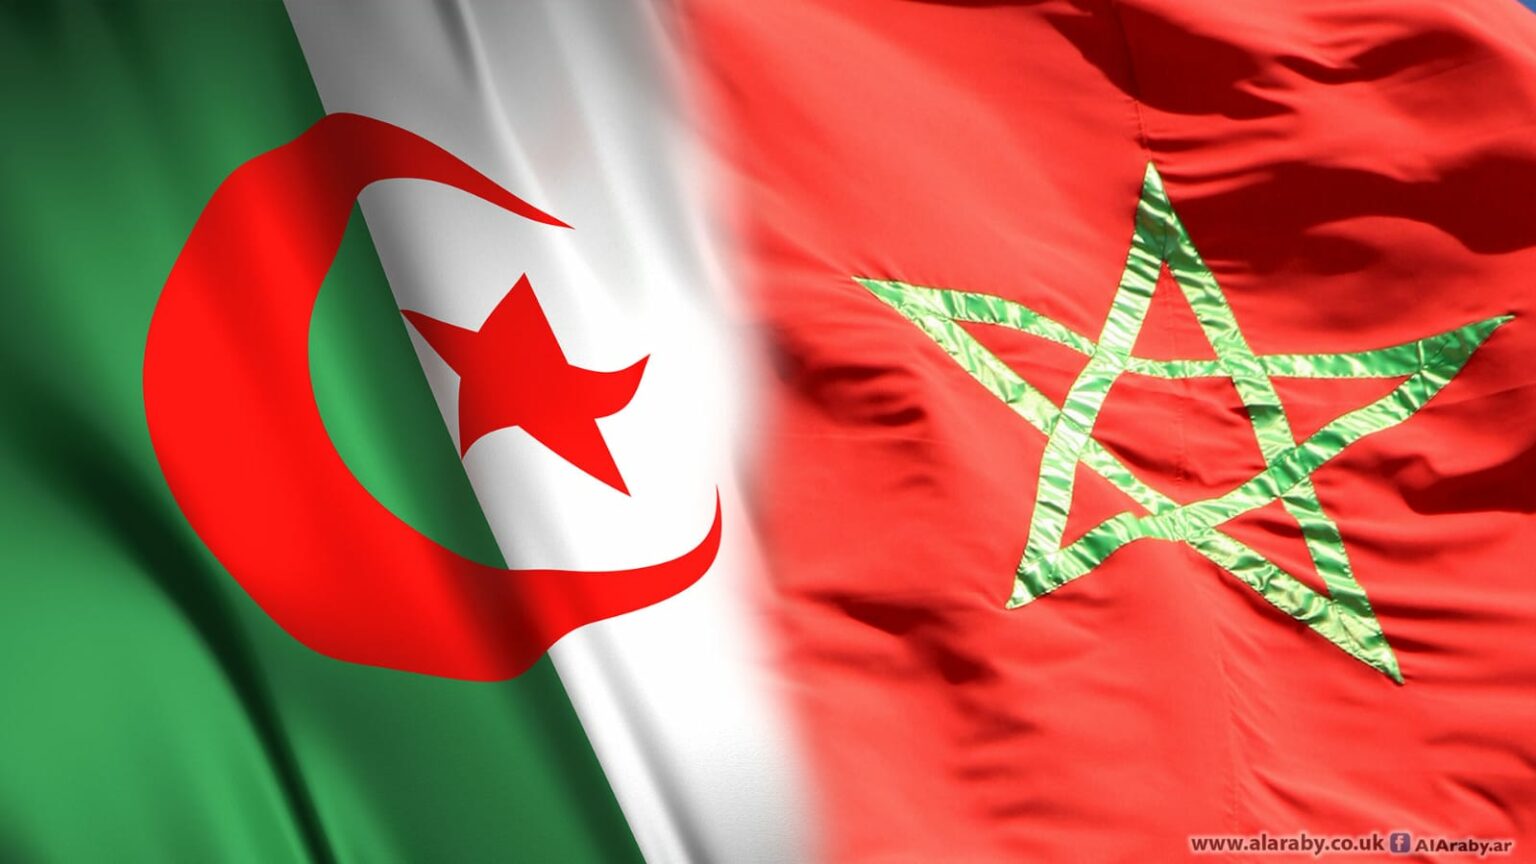 مسؤول جزائري يٌوجه اتهامات جديدة للمغرب